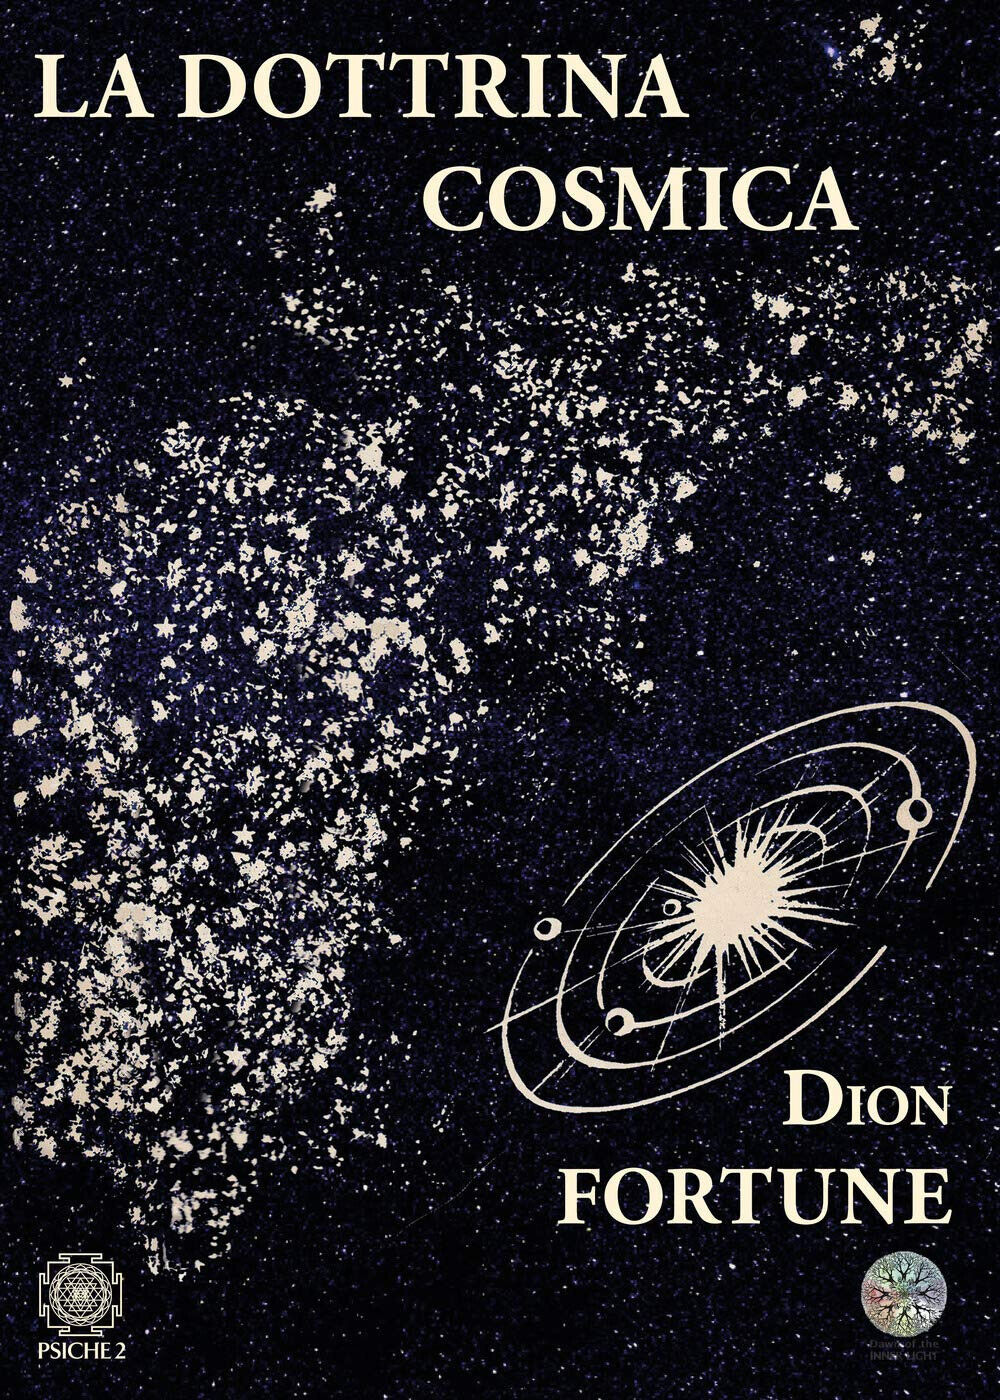 La dottrina cosmica - Dion Fortune - Psiche 2, 2020 libro usato